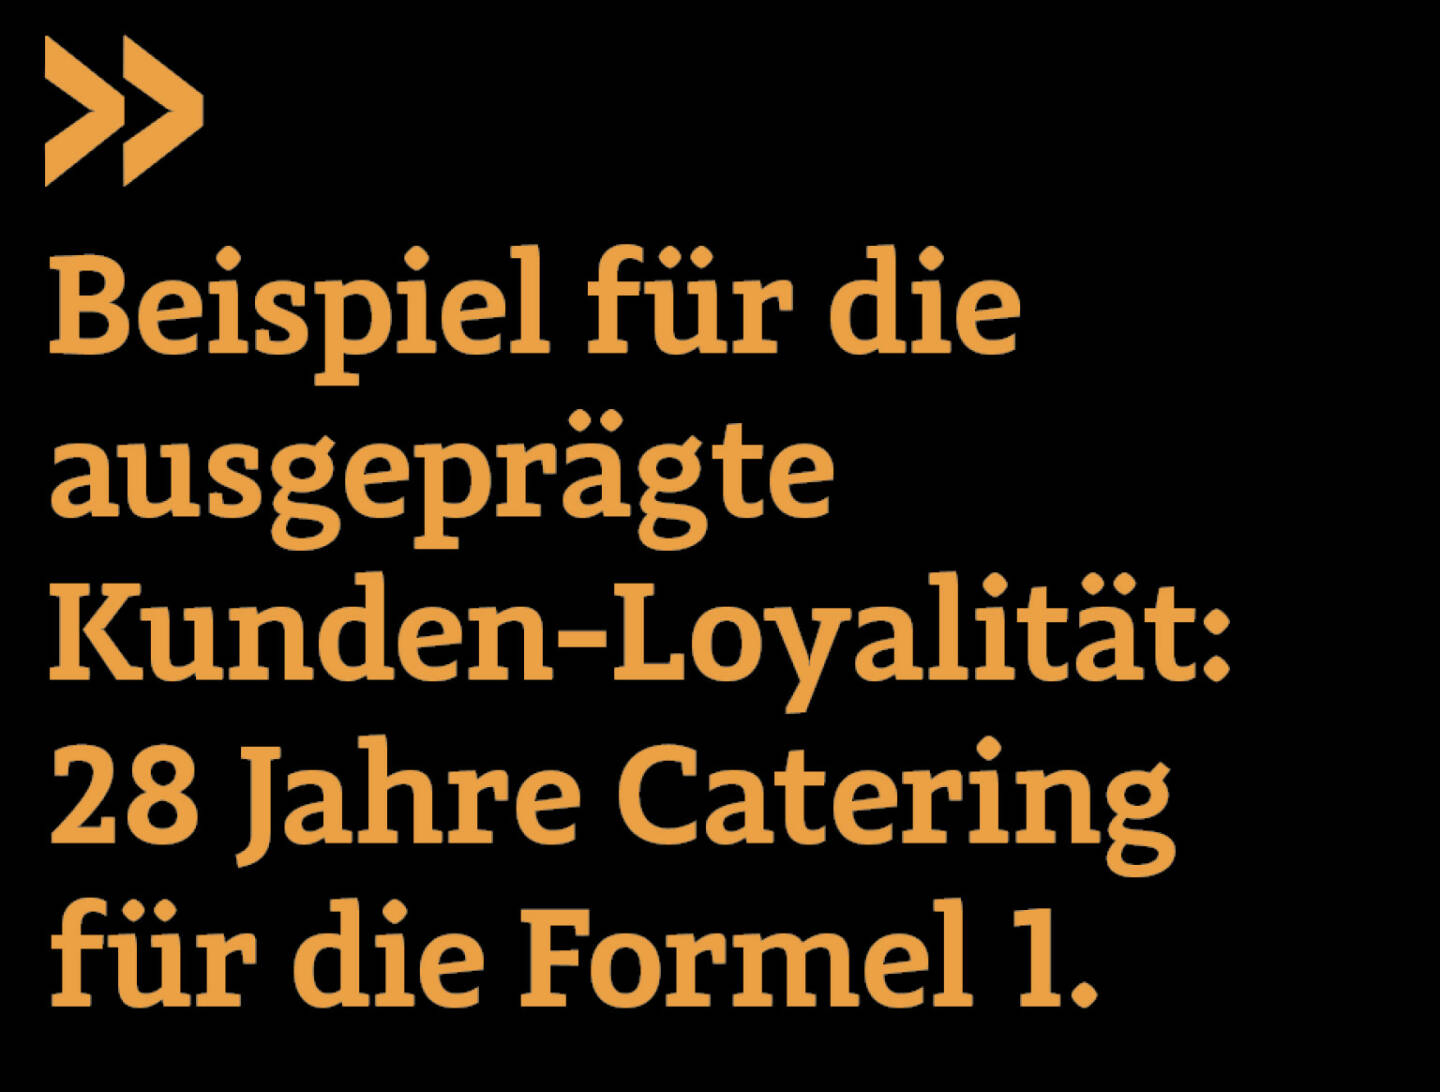 Beispiel für die ausgeprägte Kunden-Loyalität: 28 Jahre Catering für die Formel 1. 
Christian Drastil